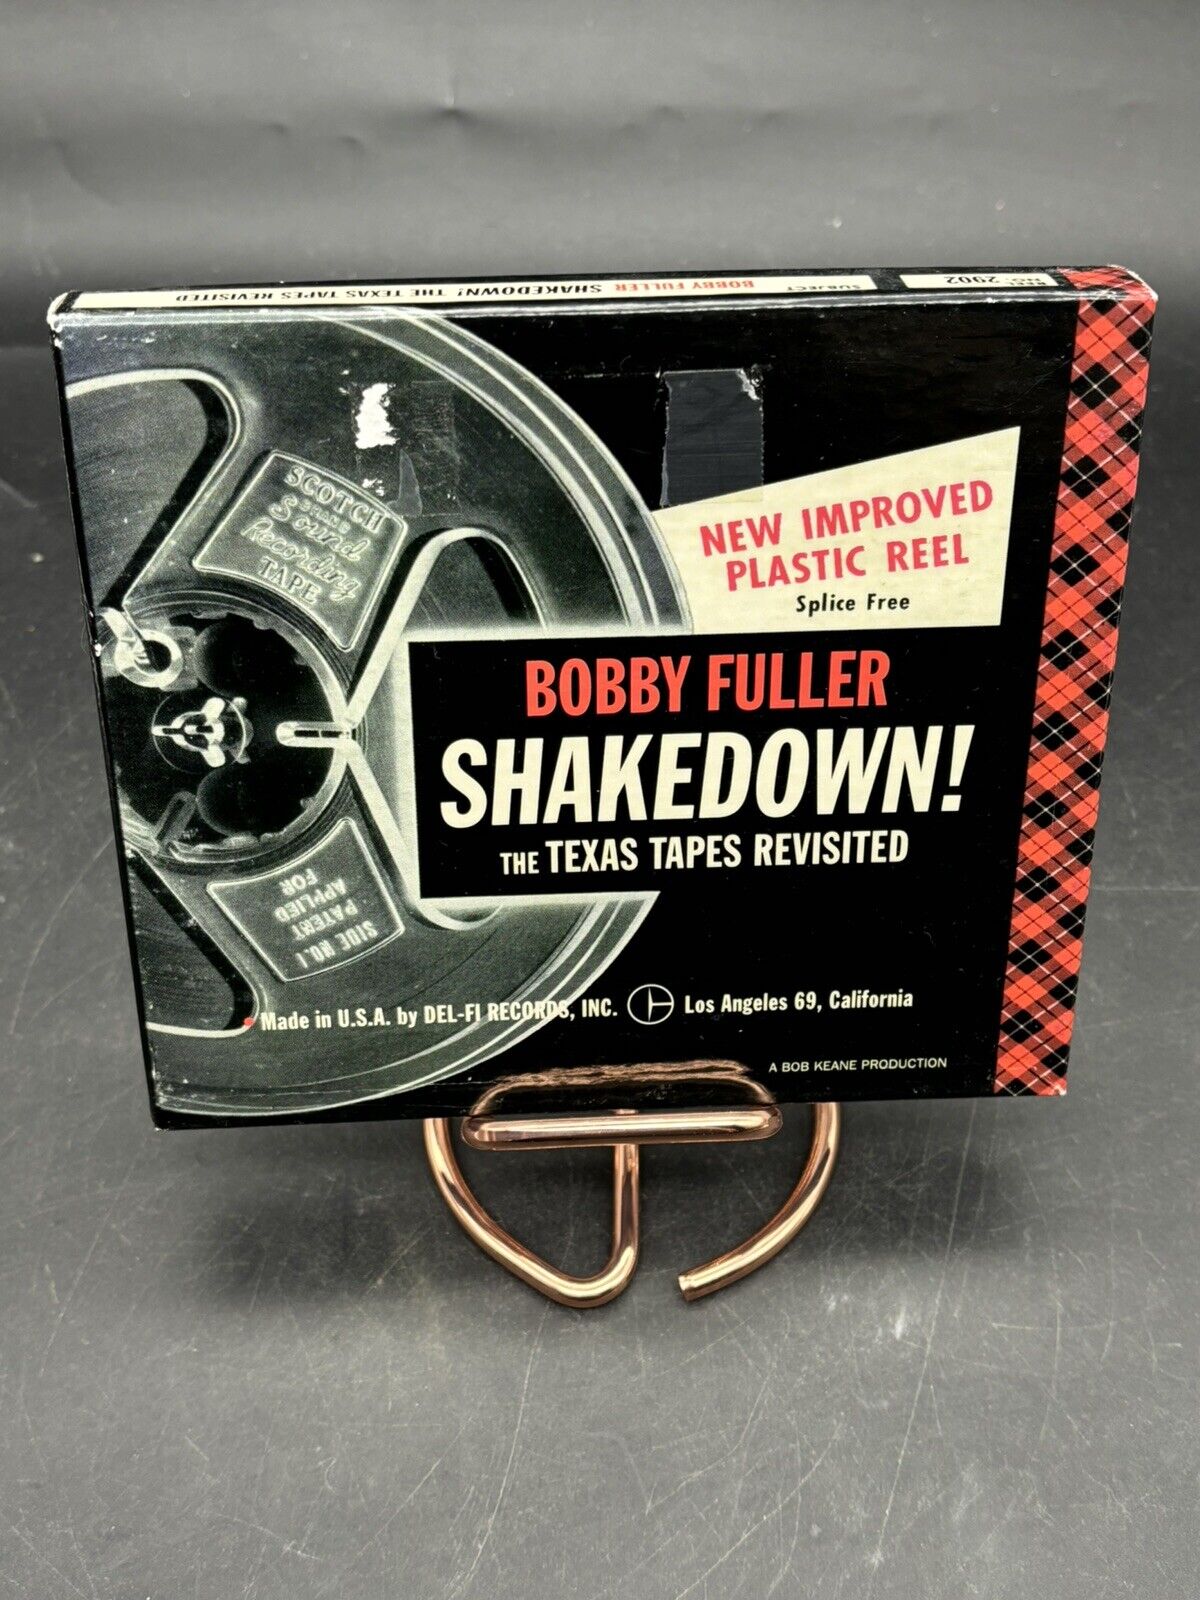 RARE Sealed BOBBY FULLER Shakedown Texas Tapes Revisited 2-CD Box Set